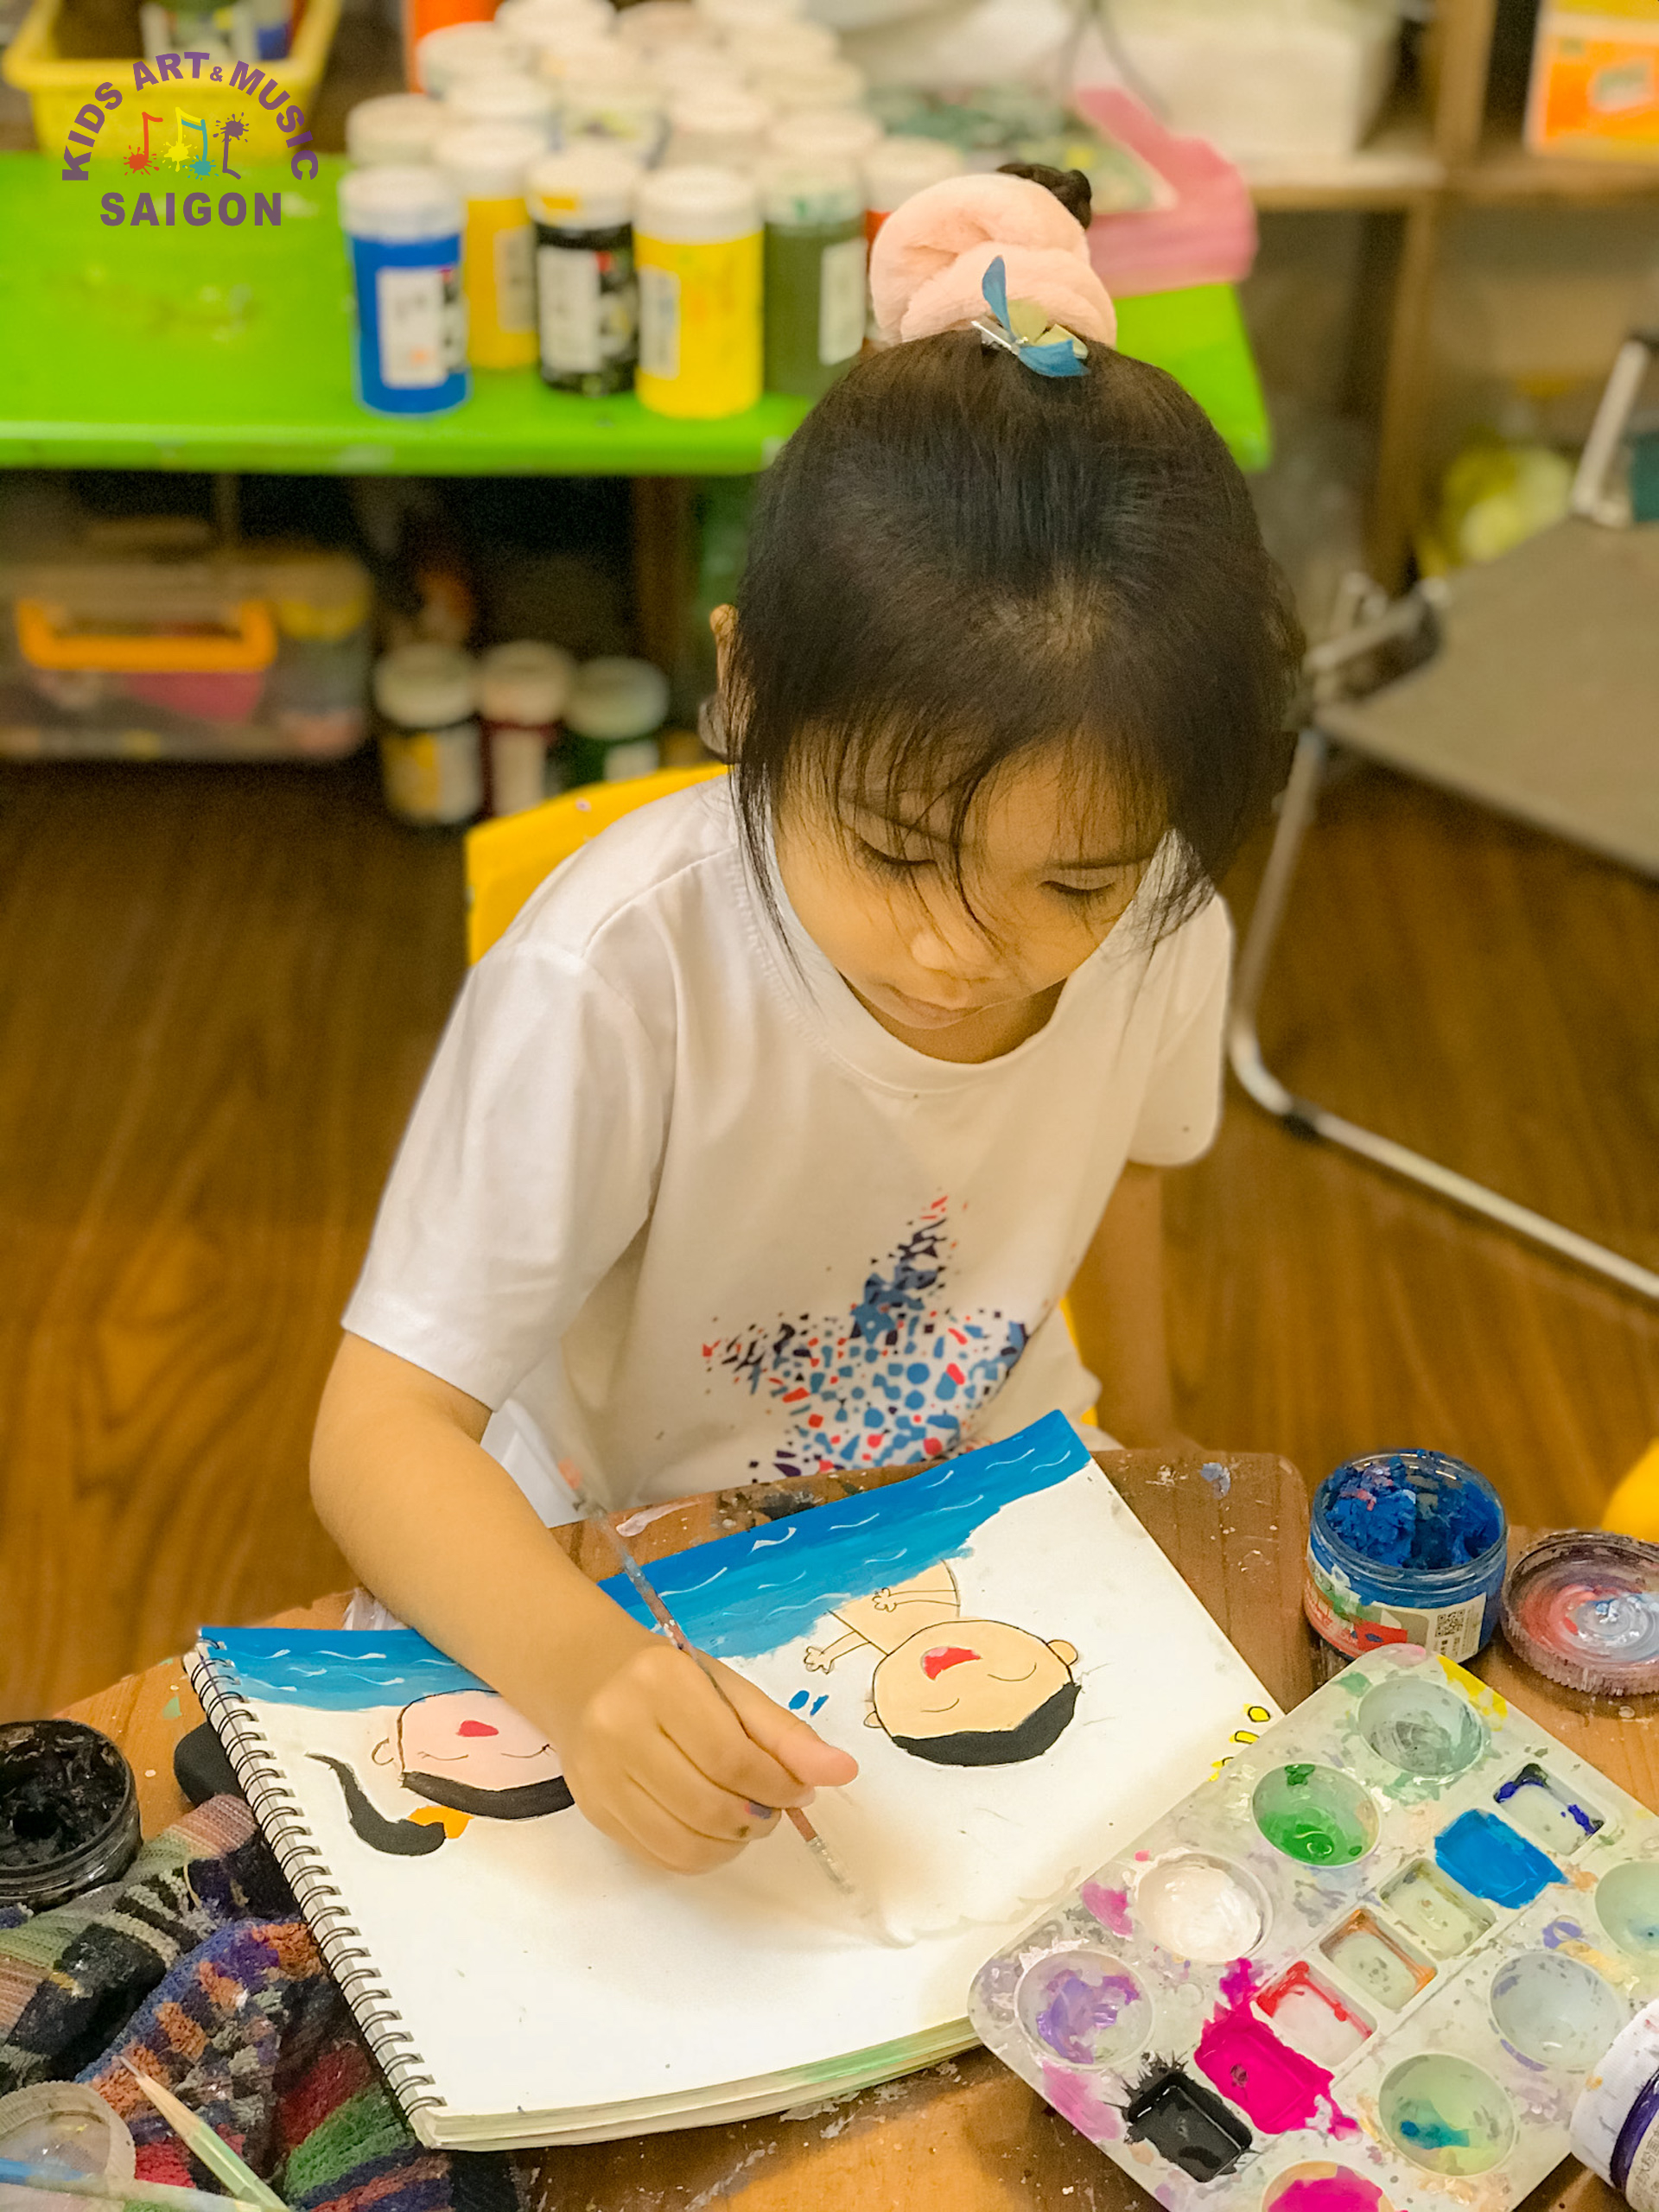 Làm thế nào để hiểu tâm lý của con qua tranh vẽ của trẻ mầm non? - Kids Art&Music Saigon